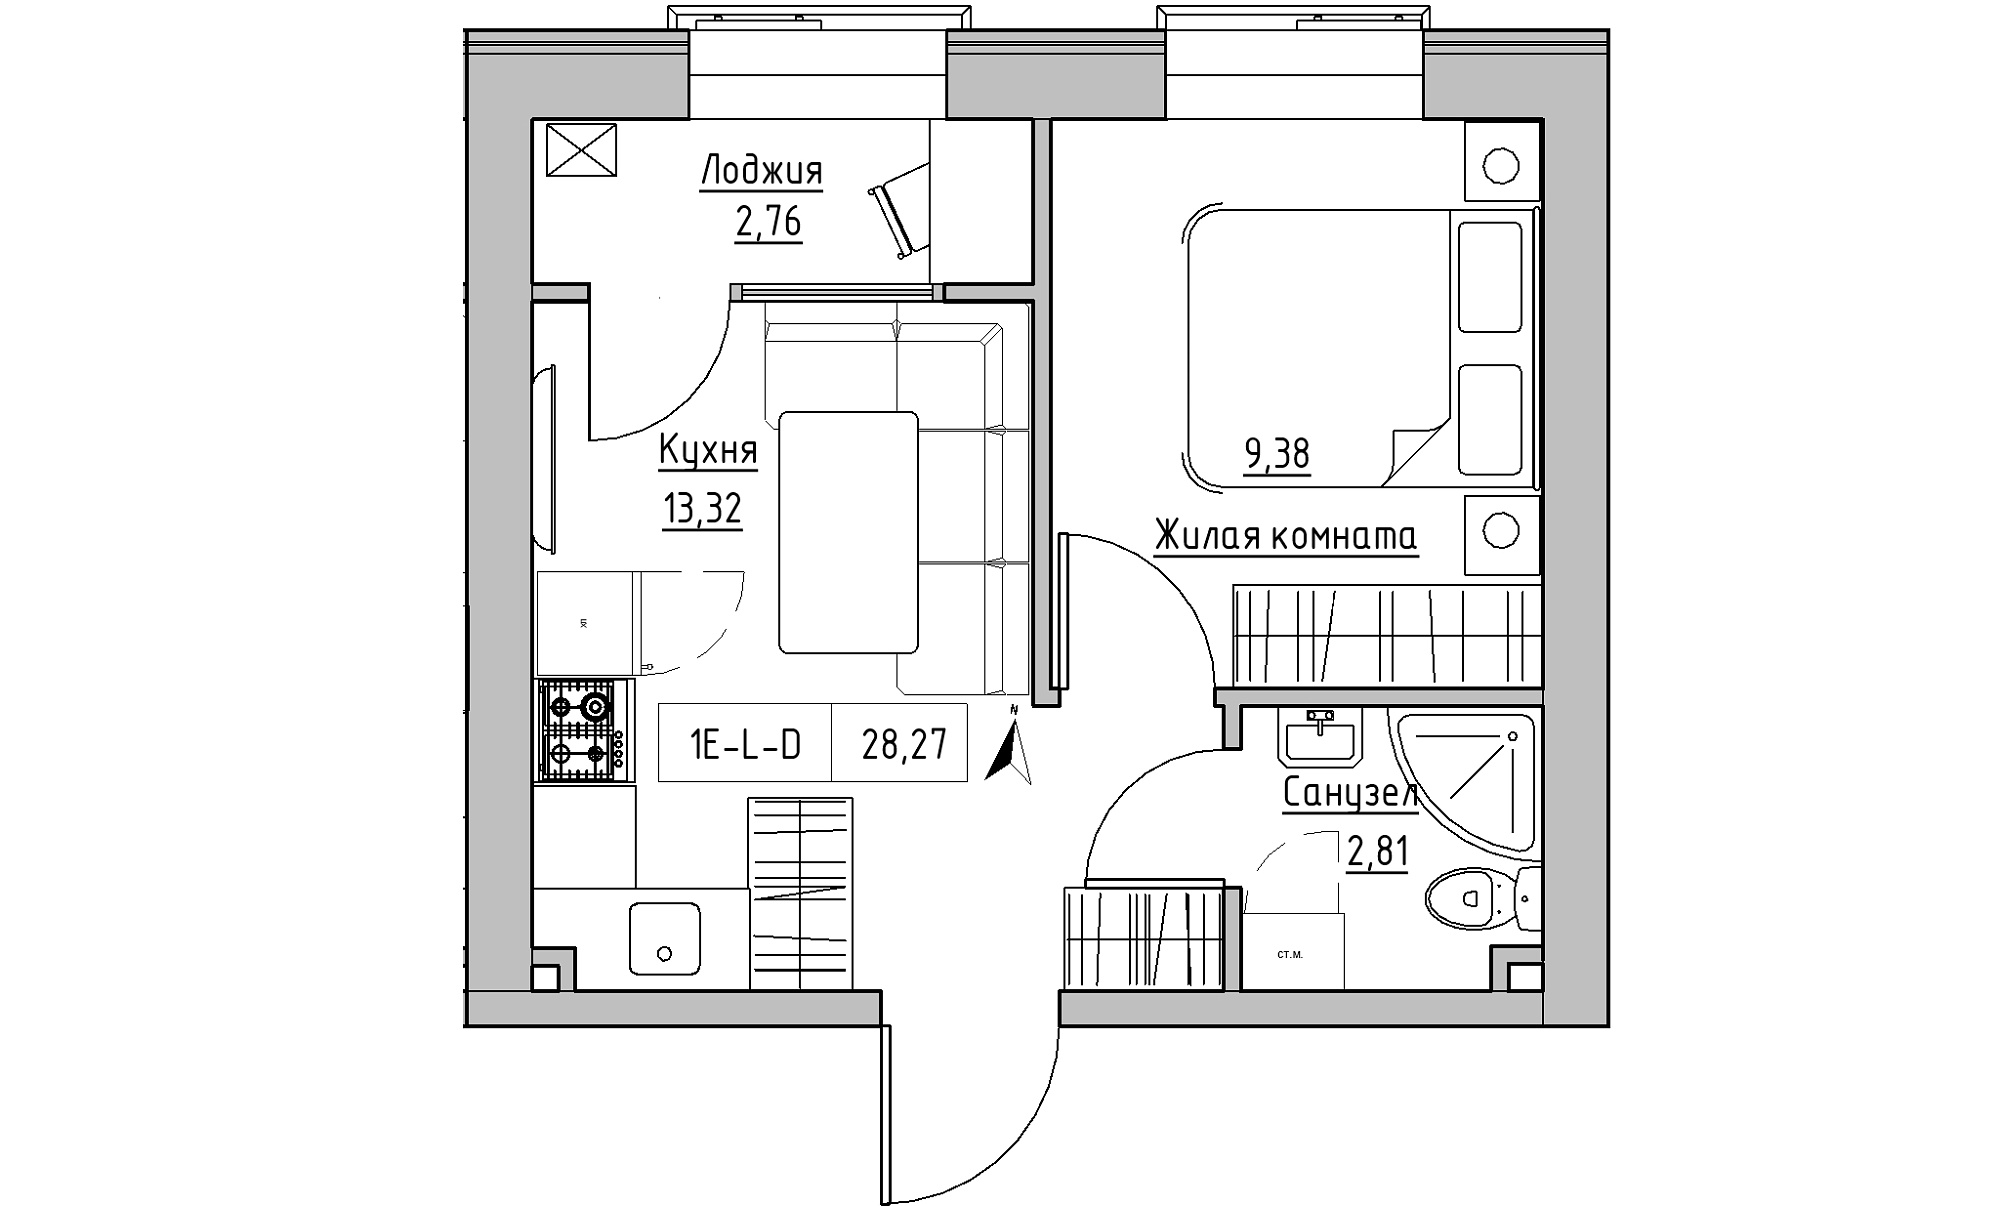 Планировка 1-к квартира площей 28.27м2, KS-023-01/0017.